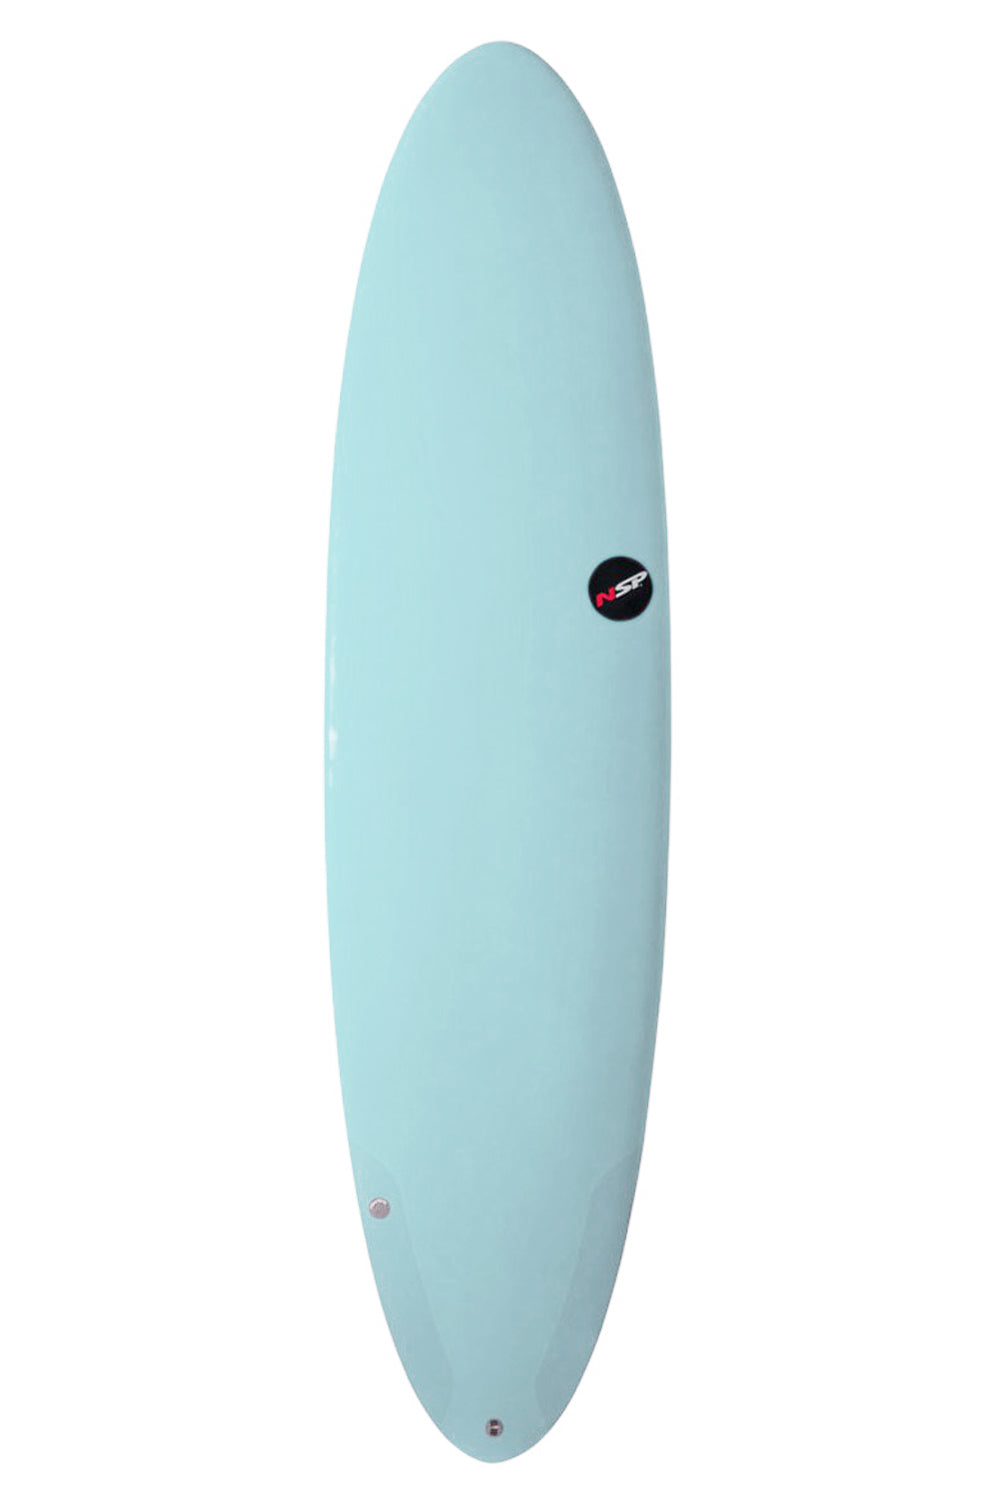 NSP Protech Funboard Surfboard